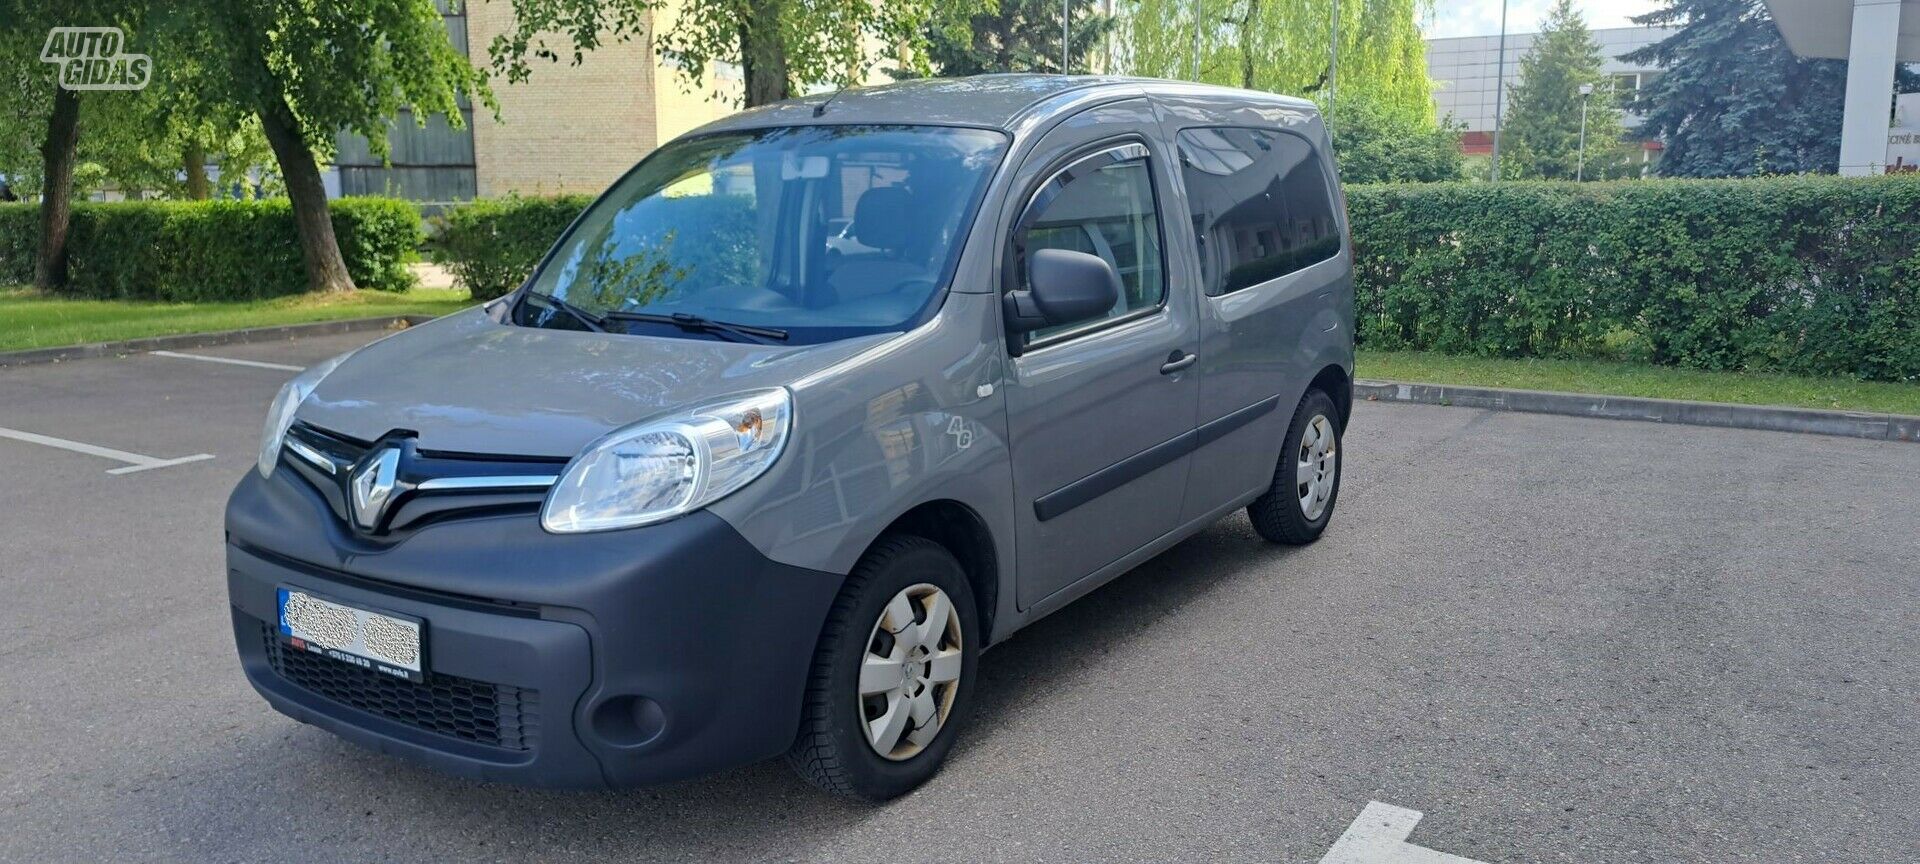 Renault Kangoo 2018 y Minibus